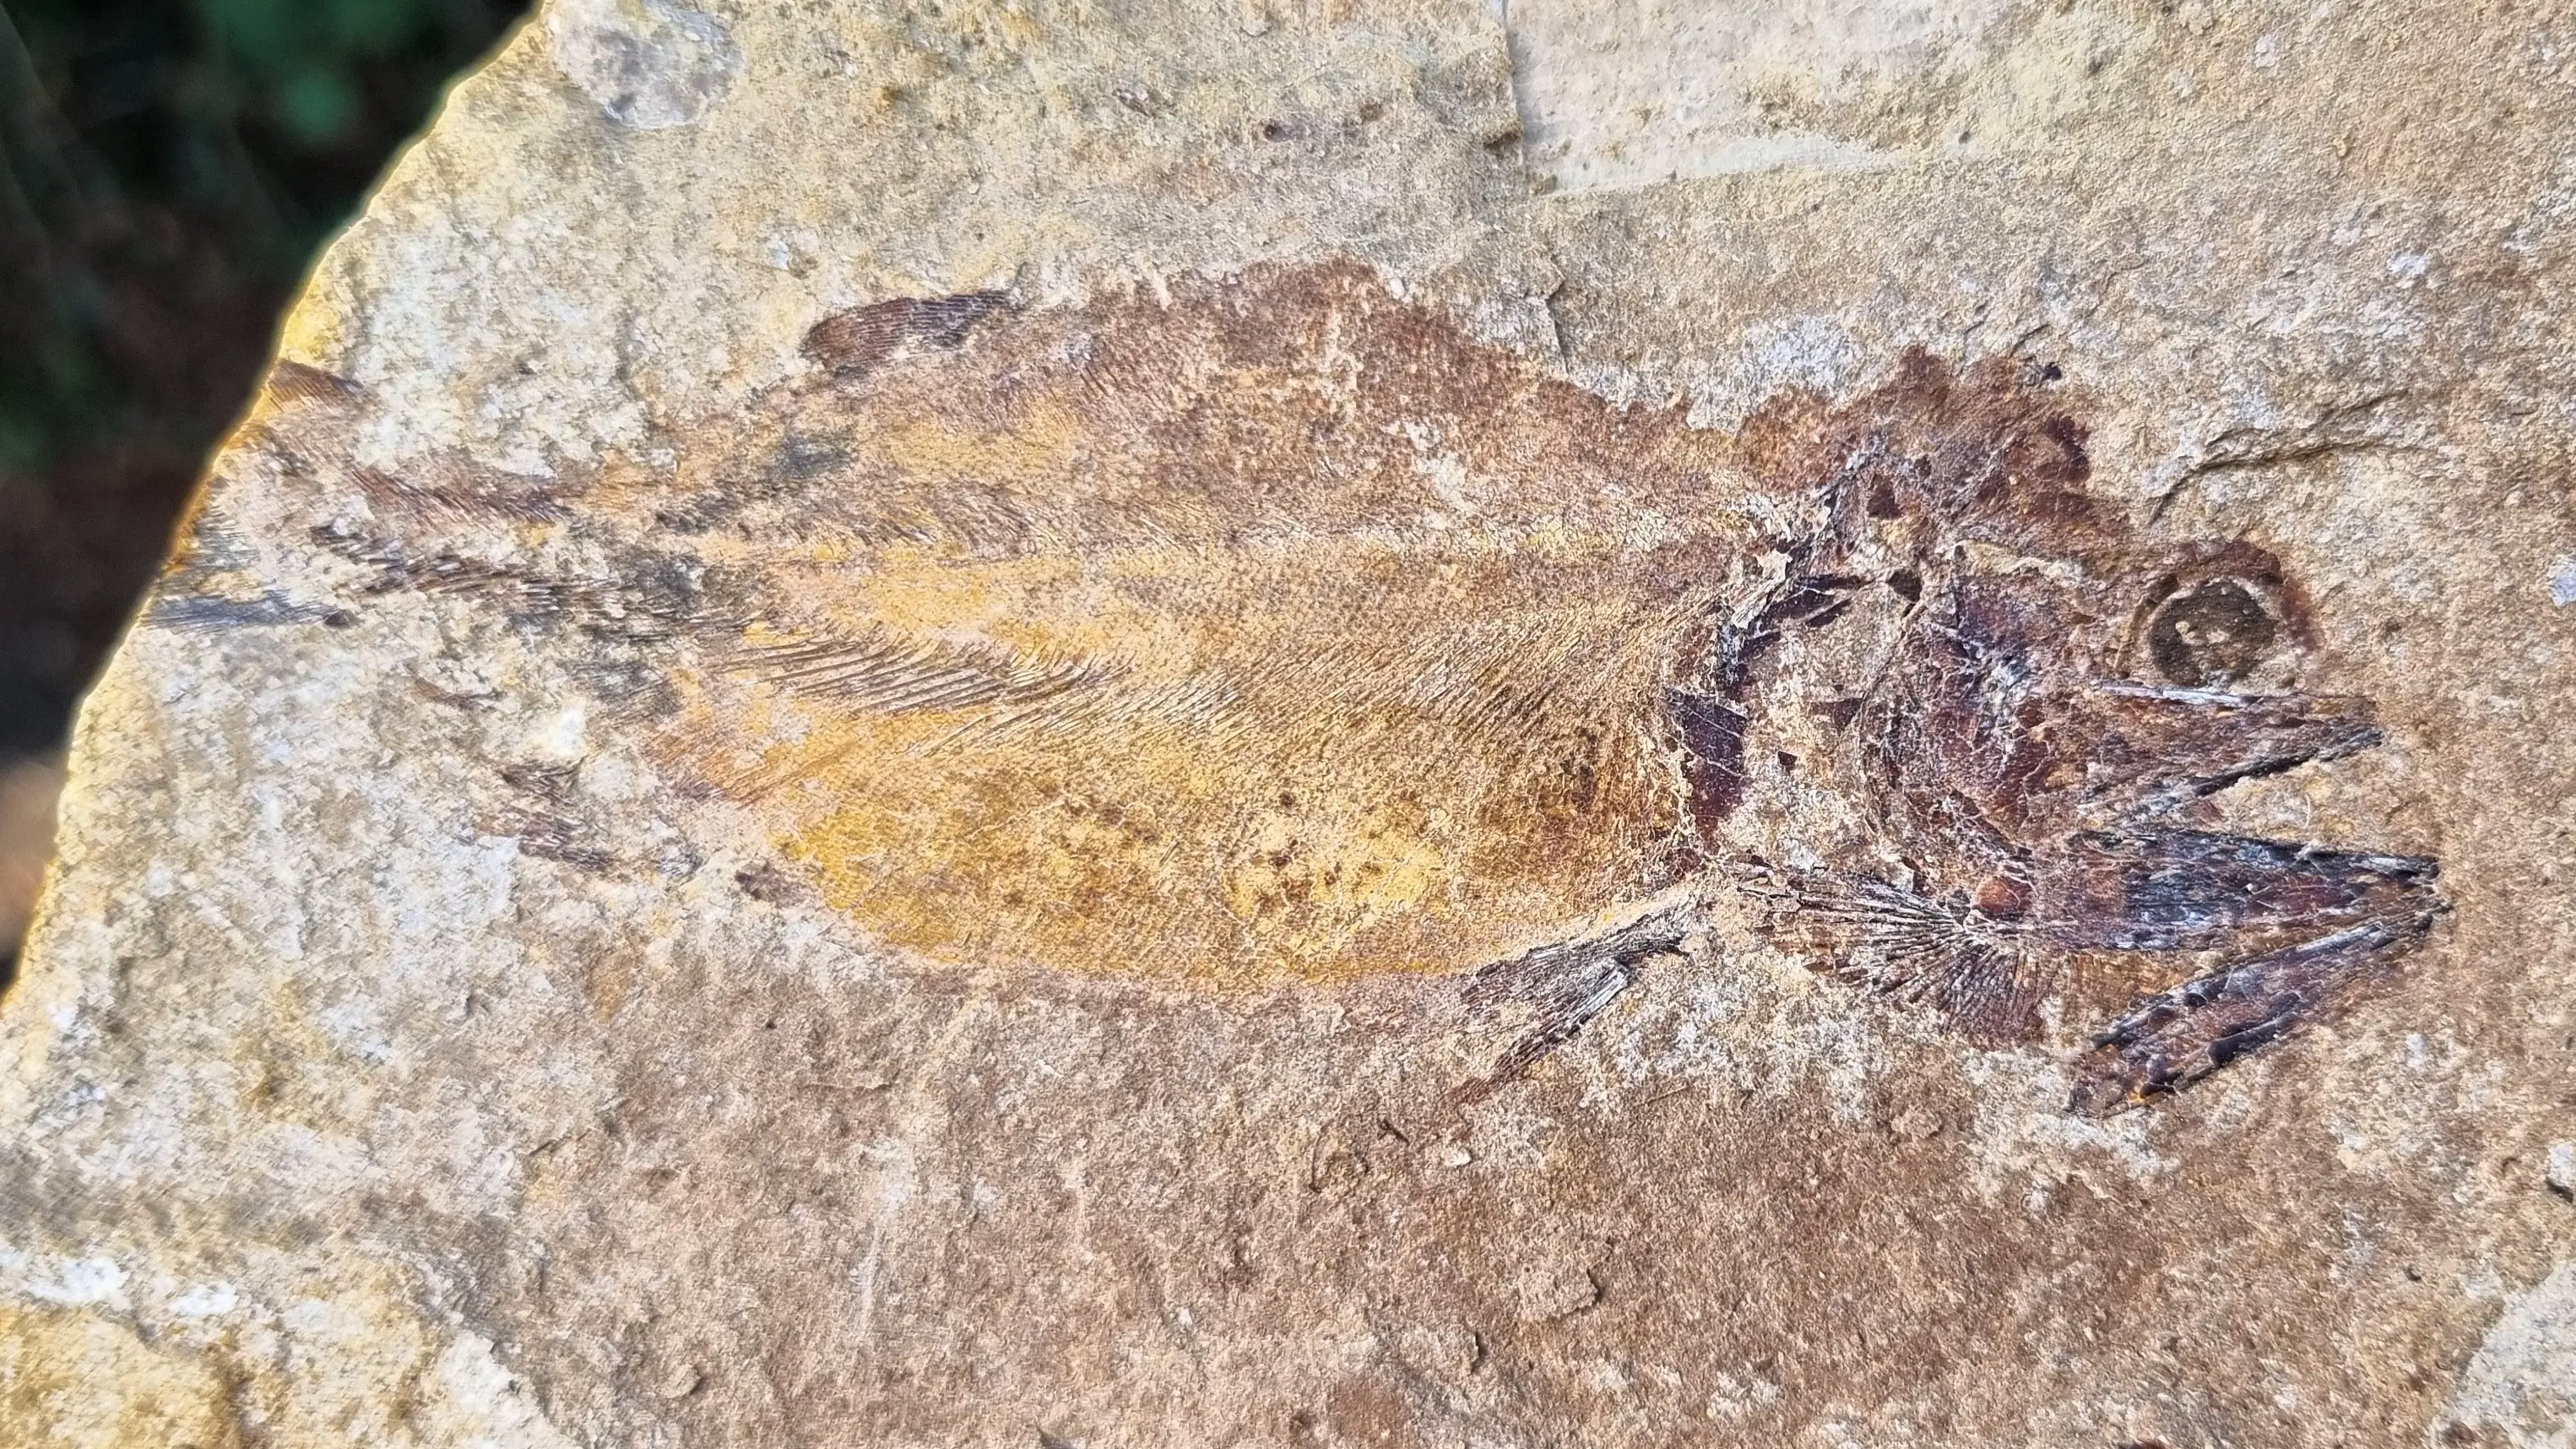 Une vue détaillée des écailles d'un poisson fossilisé trouvé sur le site.